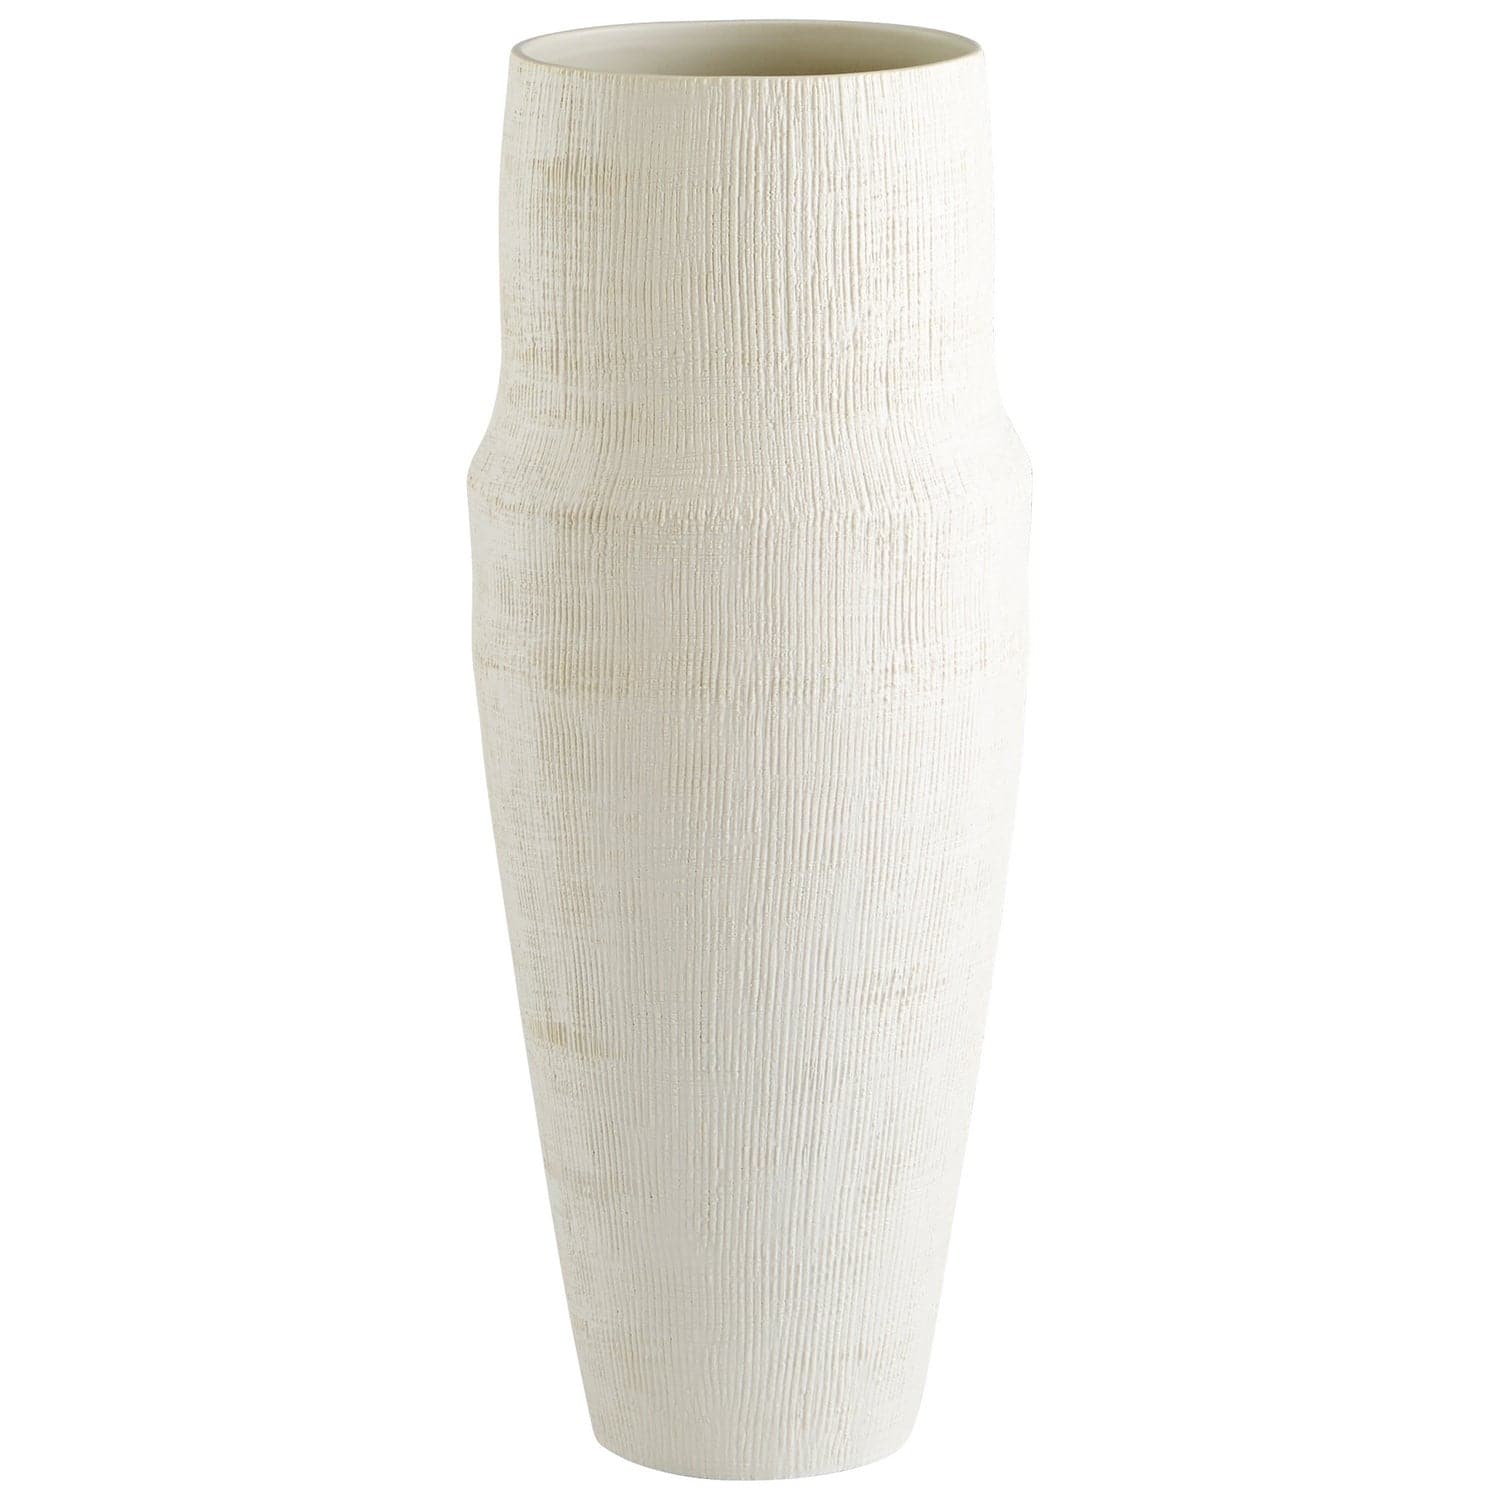 Cyan - 10922 - Vase - White